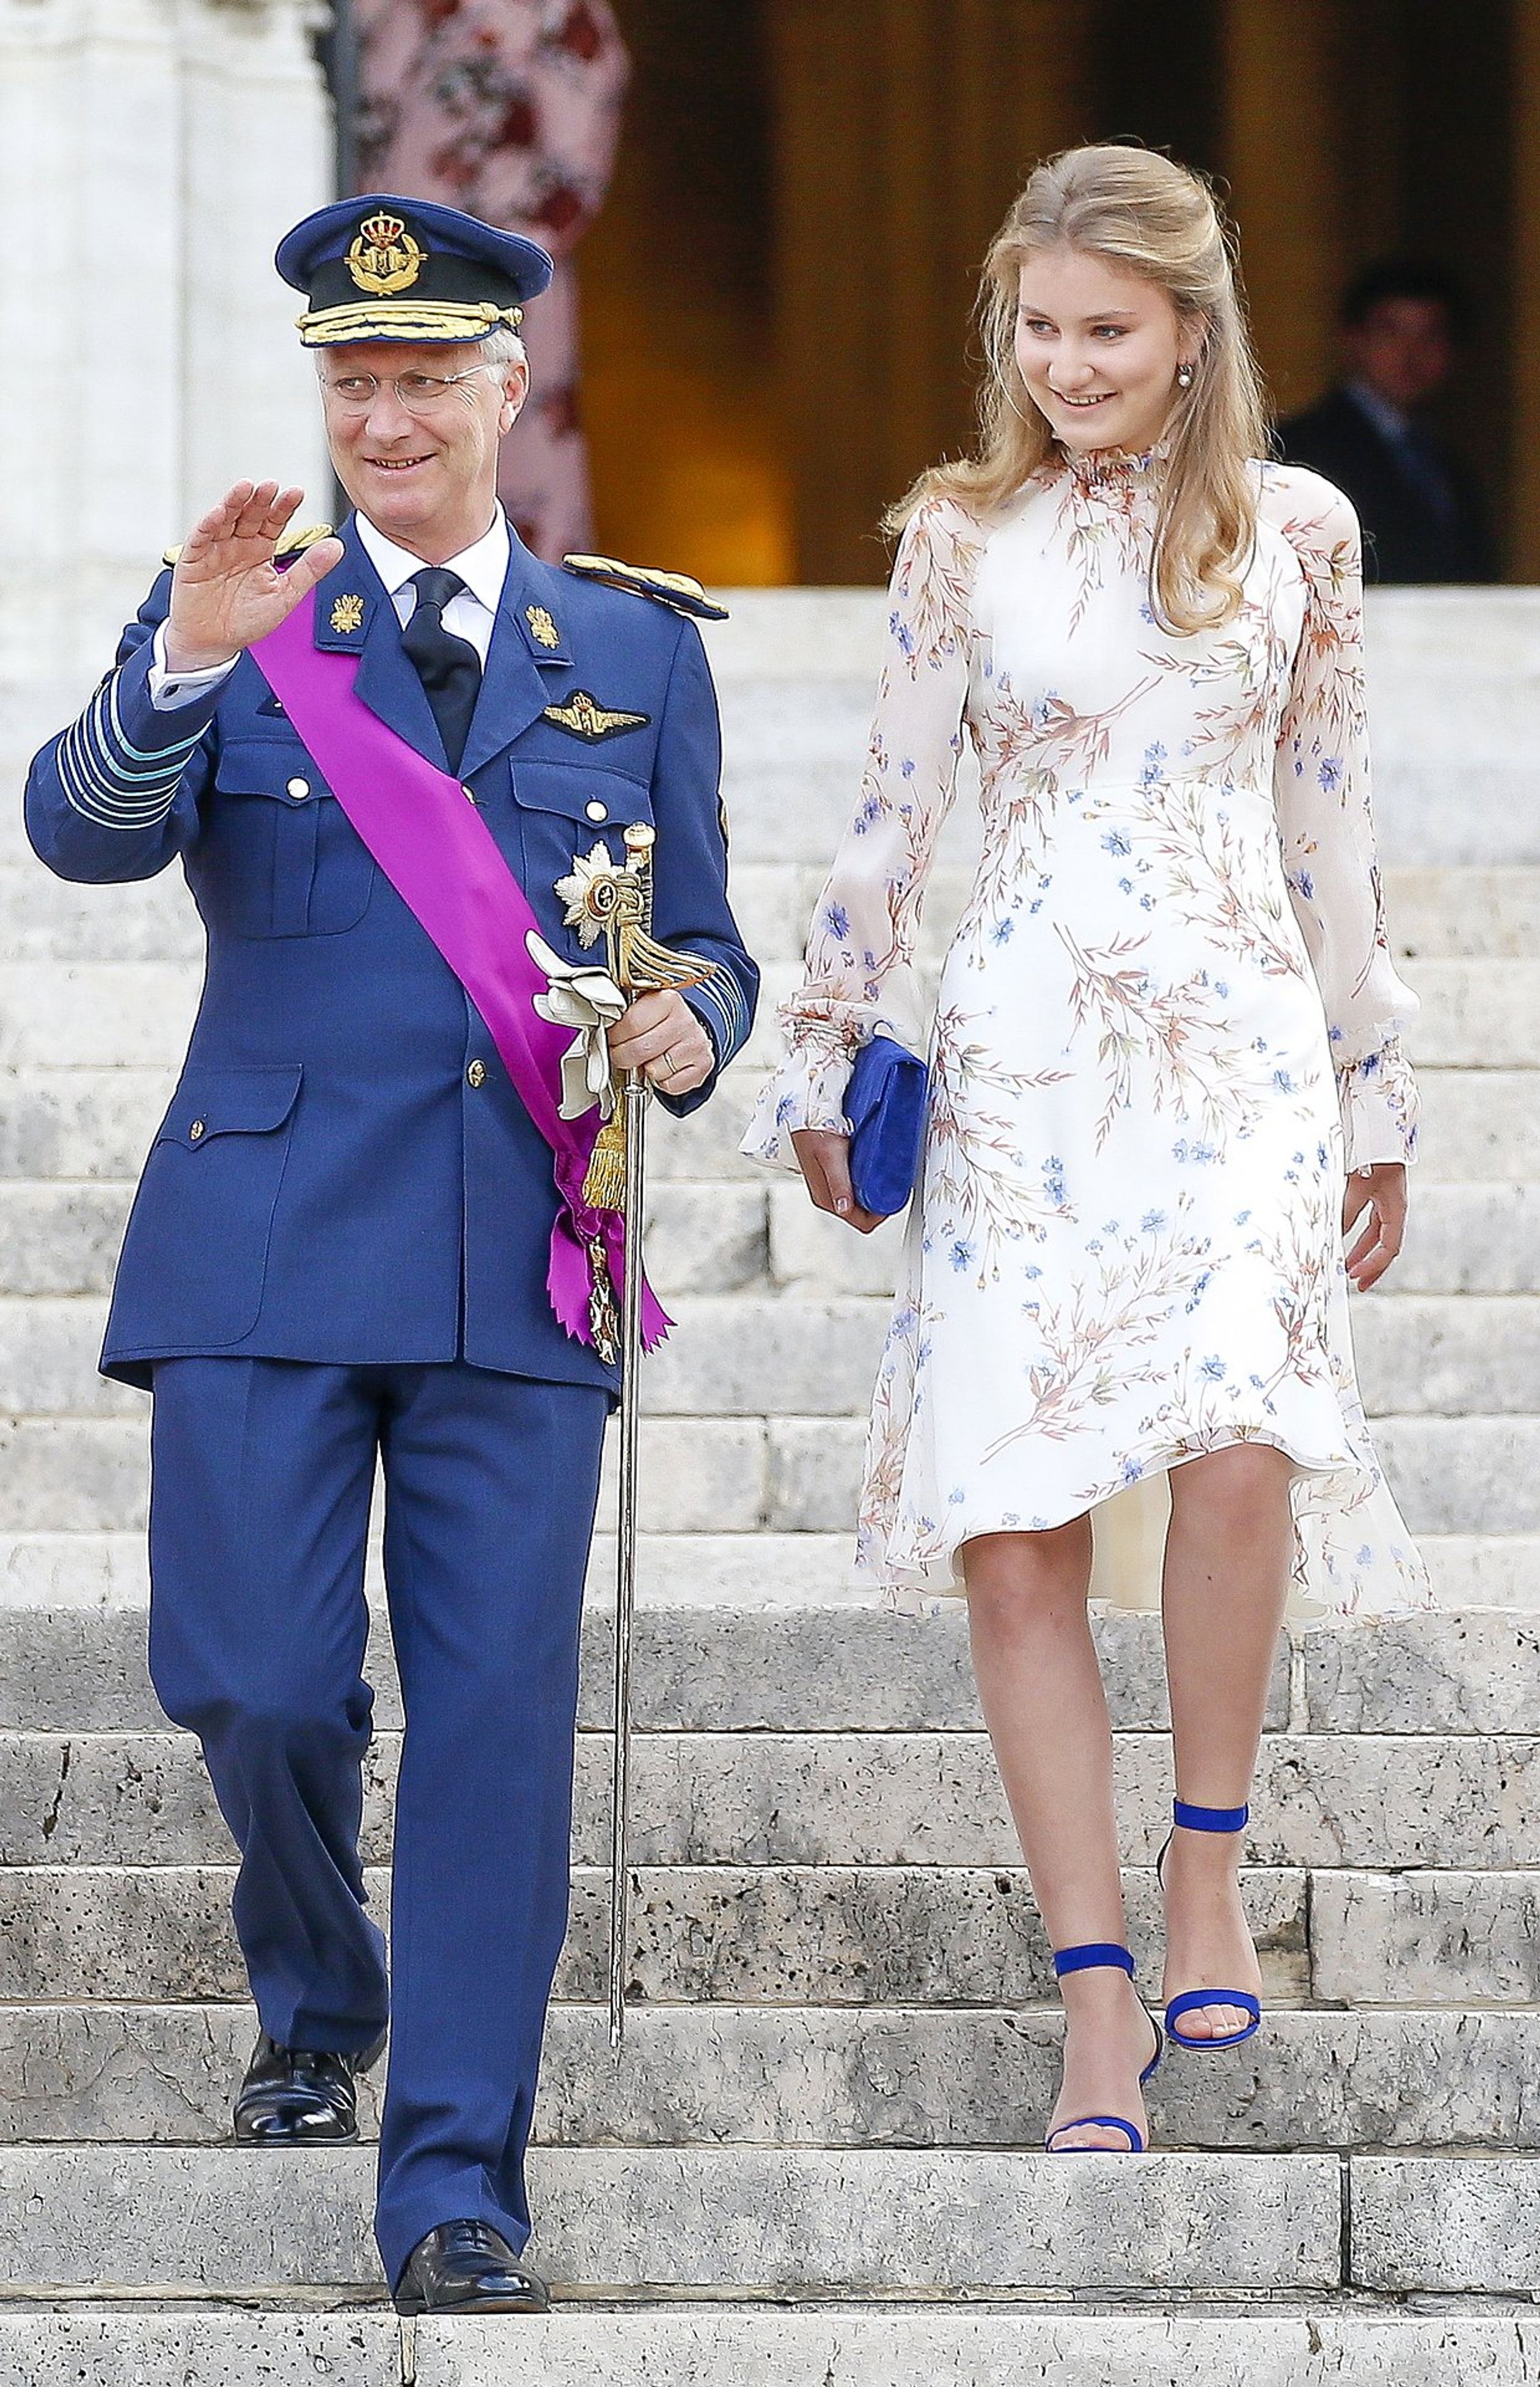 Koning Filip en prinses Elisabeth op de foto tijdens de koninklijke nationale feestdag in juli 2019.